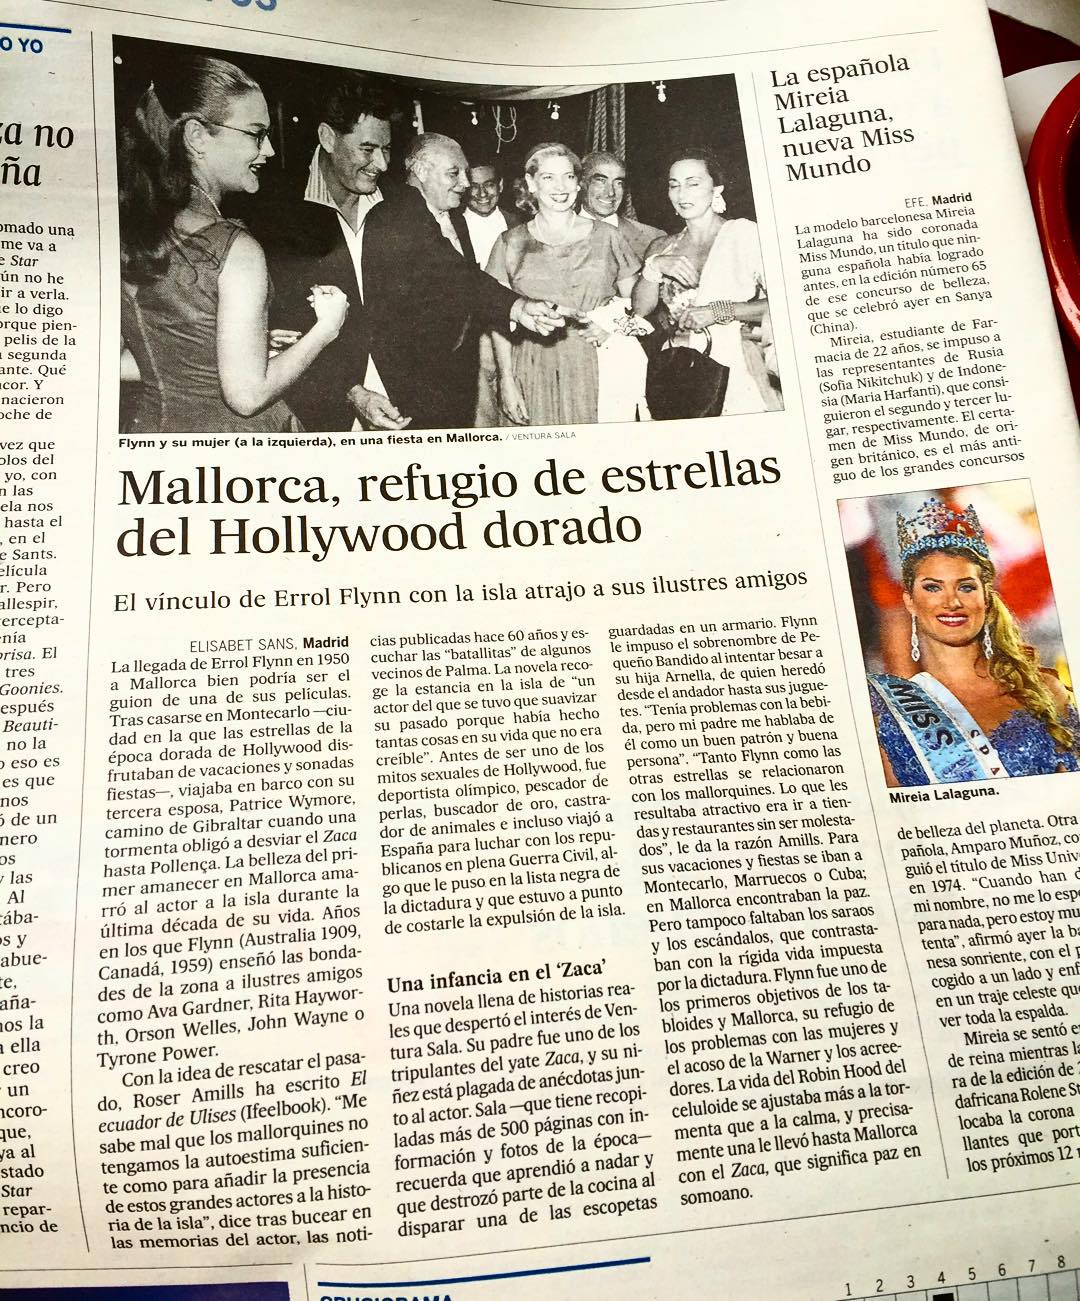 Si hoy echas un vistazo a El País encontrarás un reportaje sobre #elecuadordeUlises y la estancia de Errol Flynn en Mallorca